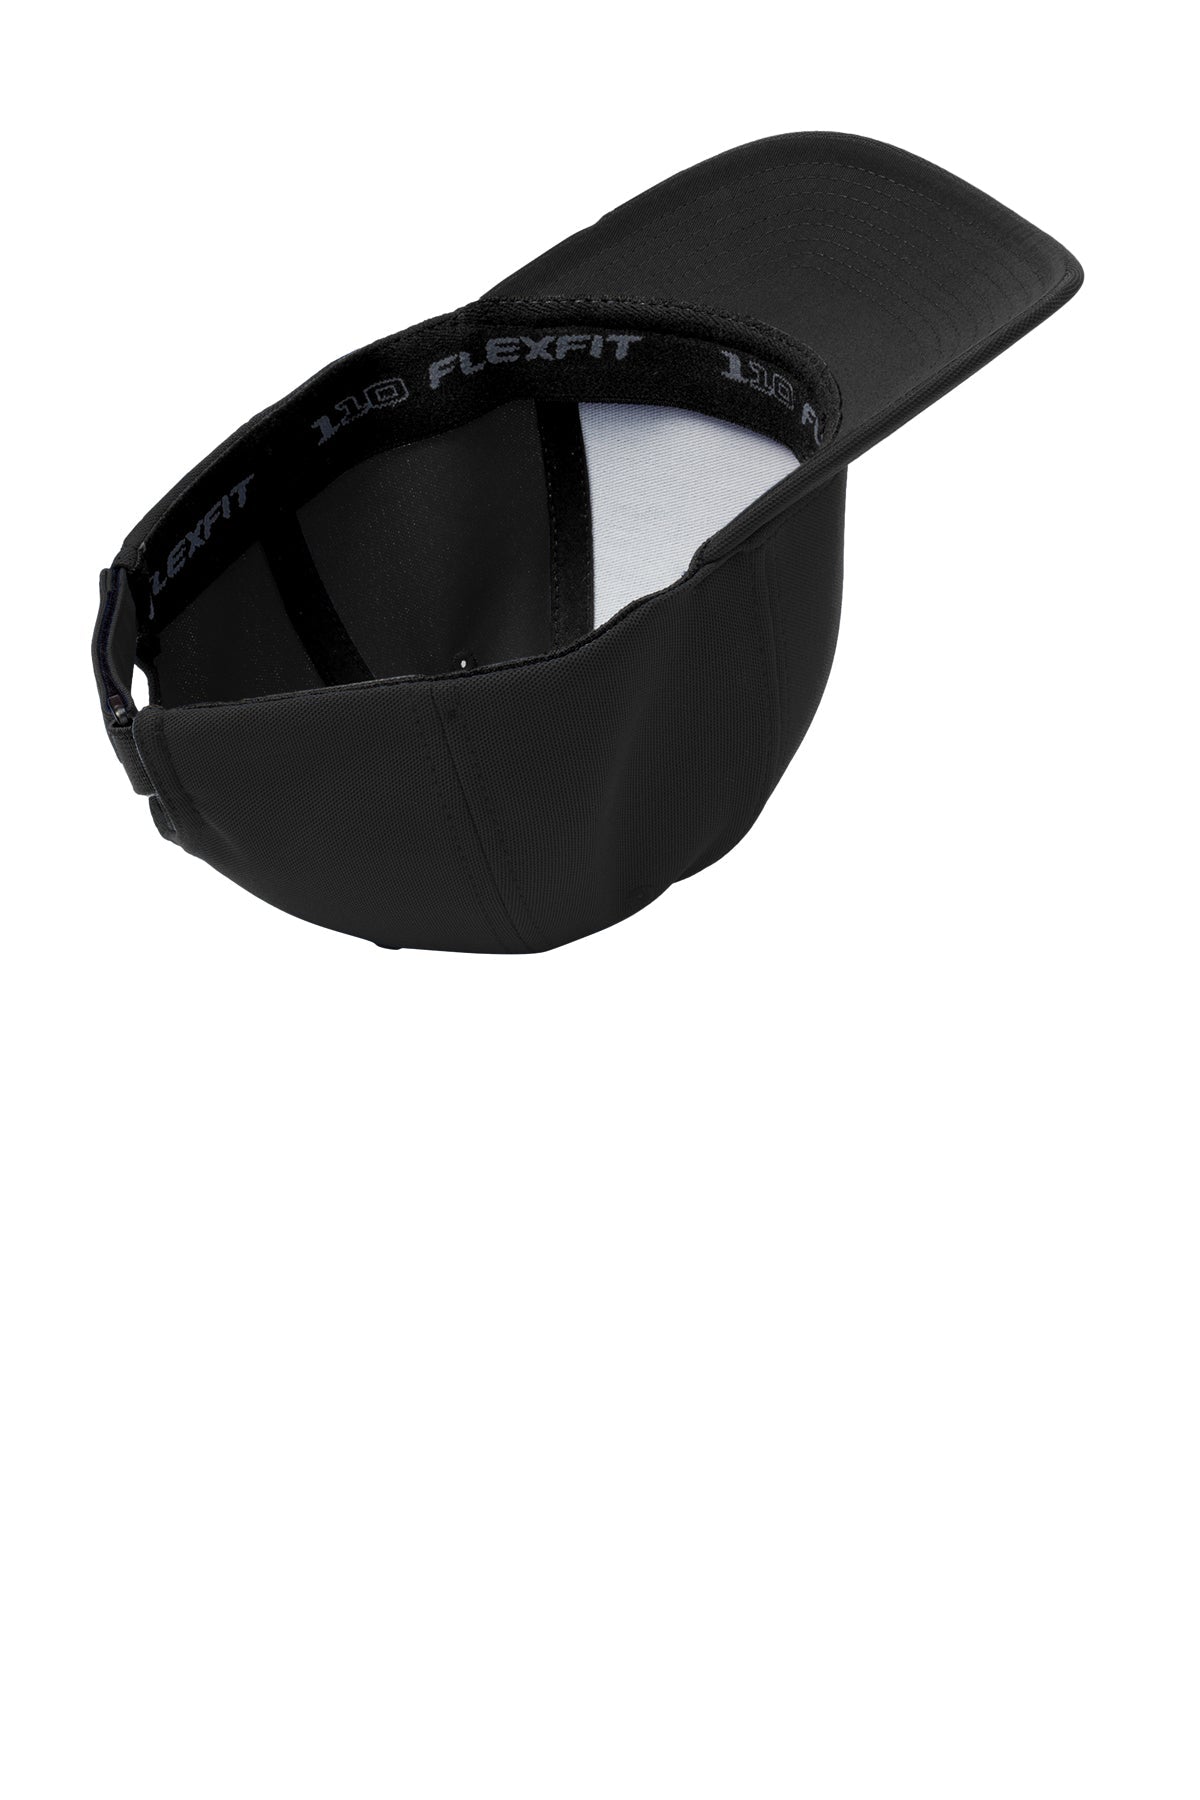 Port Authority Flexfit Custom One Ten Cool & Dry Mini Pique Caps, Black